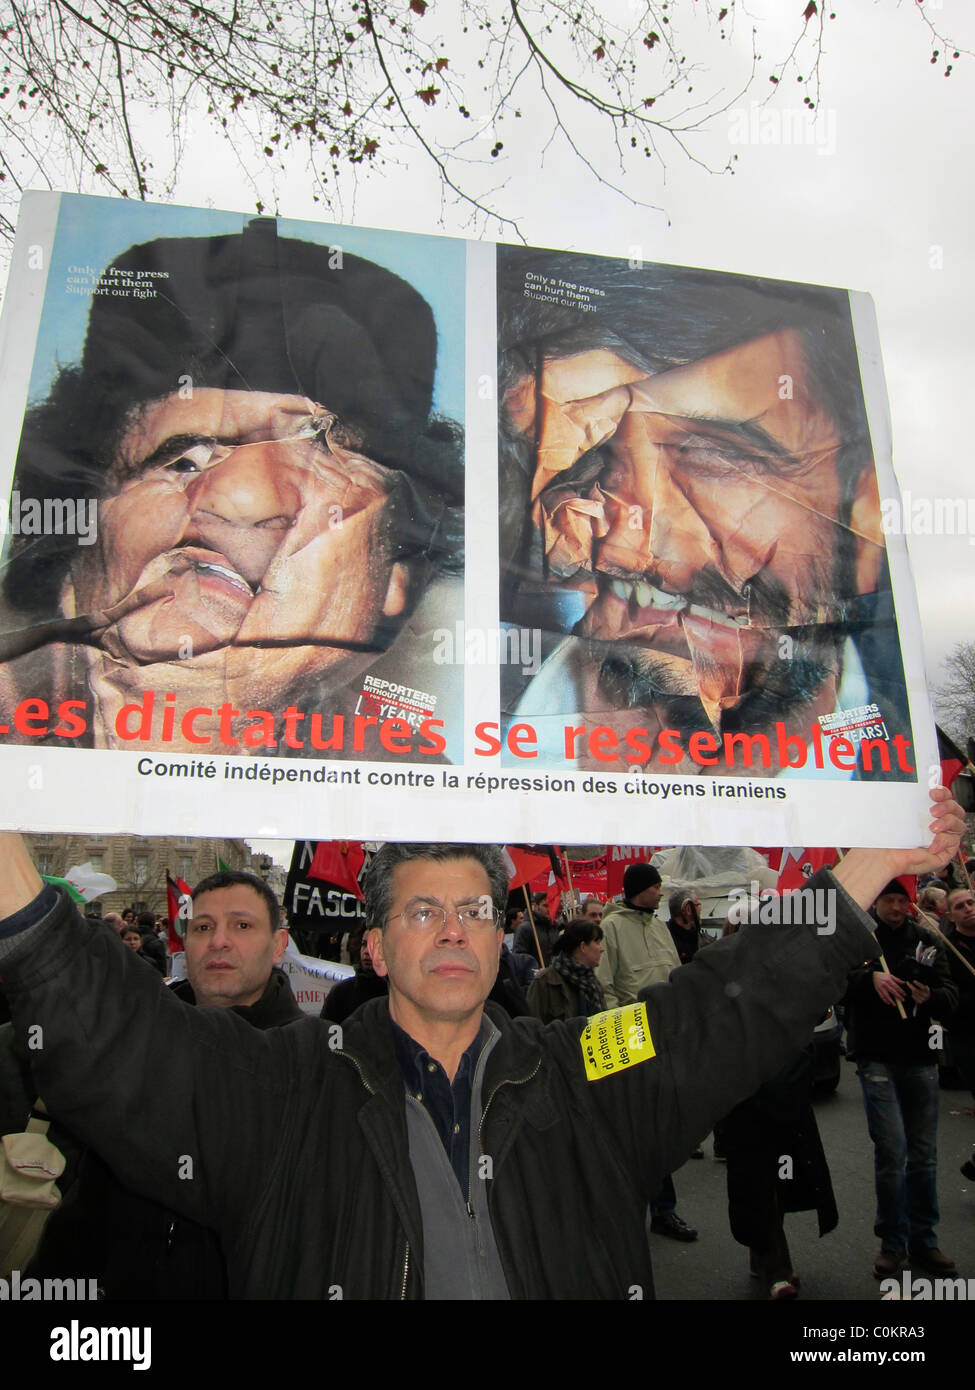 Paris, France, affiche de protestation française Libye démonstration, en soutien à la révolution libyenne, Homme tenant signe avec photos de Kadhafi sur la rue, printemps arabe, politique Banque D'Images